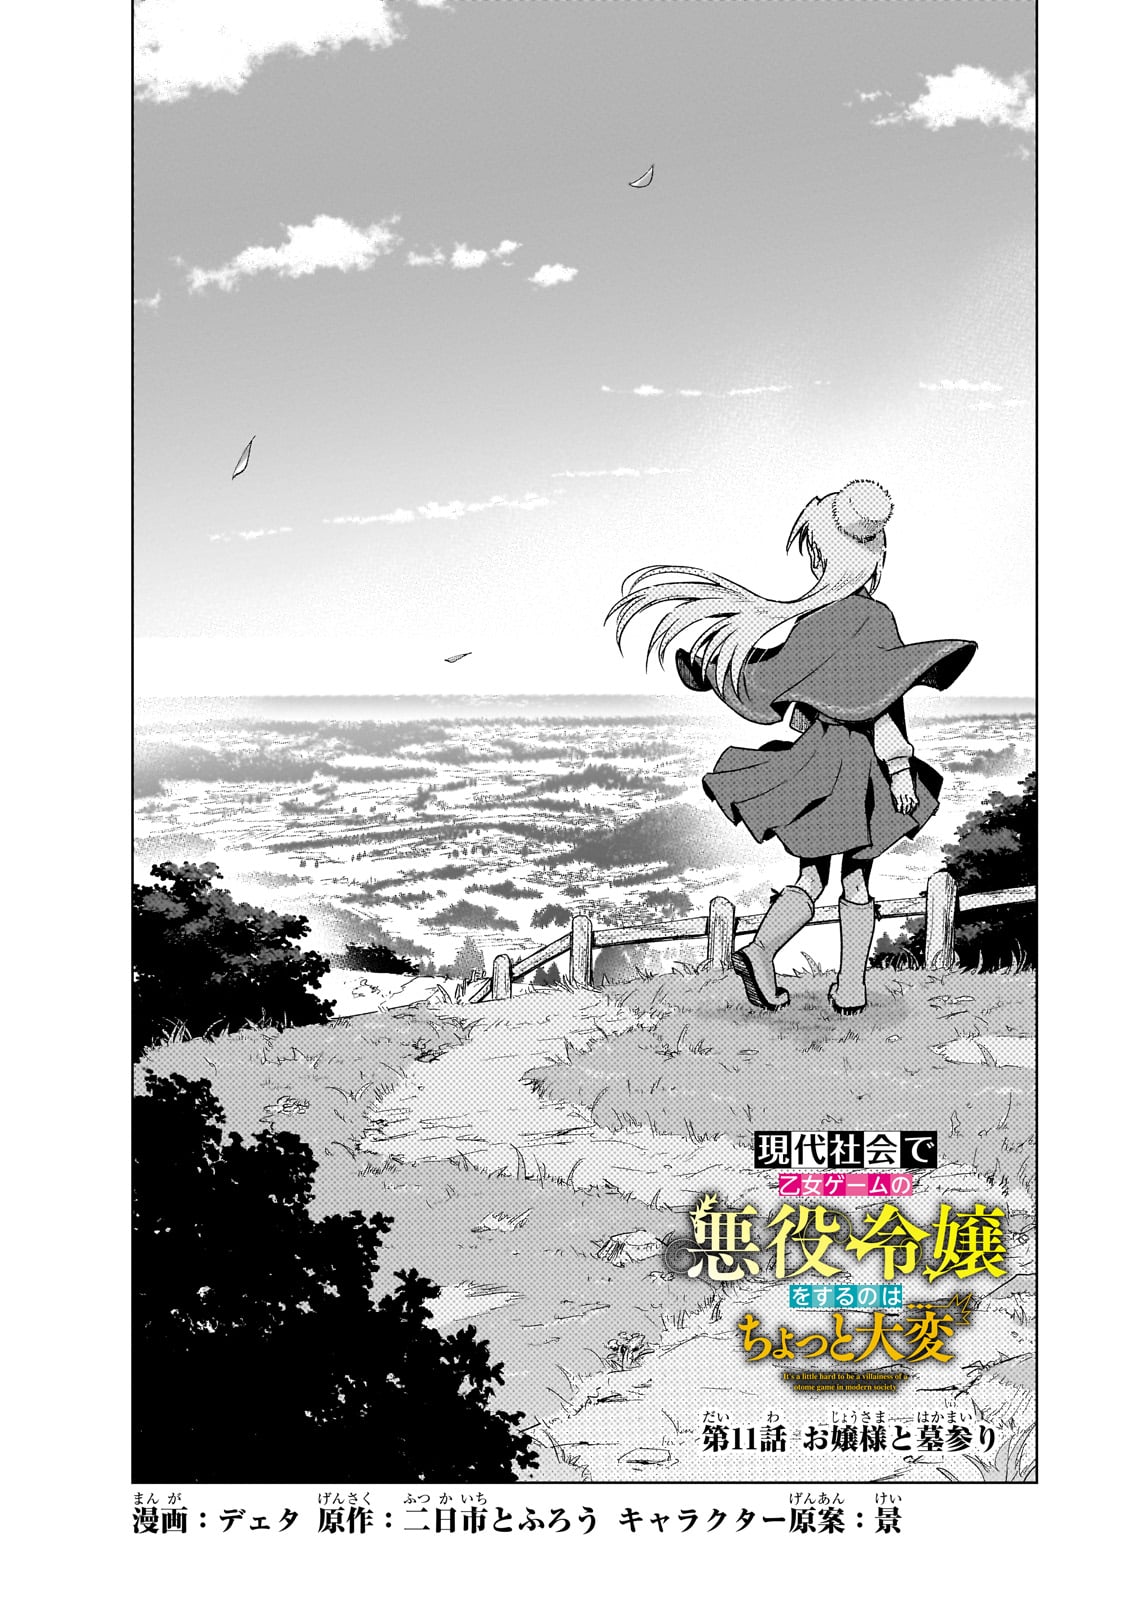 Gendai Shakai de Otome Game no Akuyaku Reijou wo suru no wa Chotto Taihen - Chapter 11 - Page 2